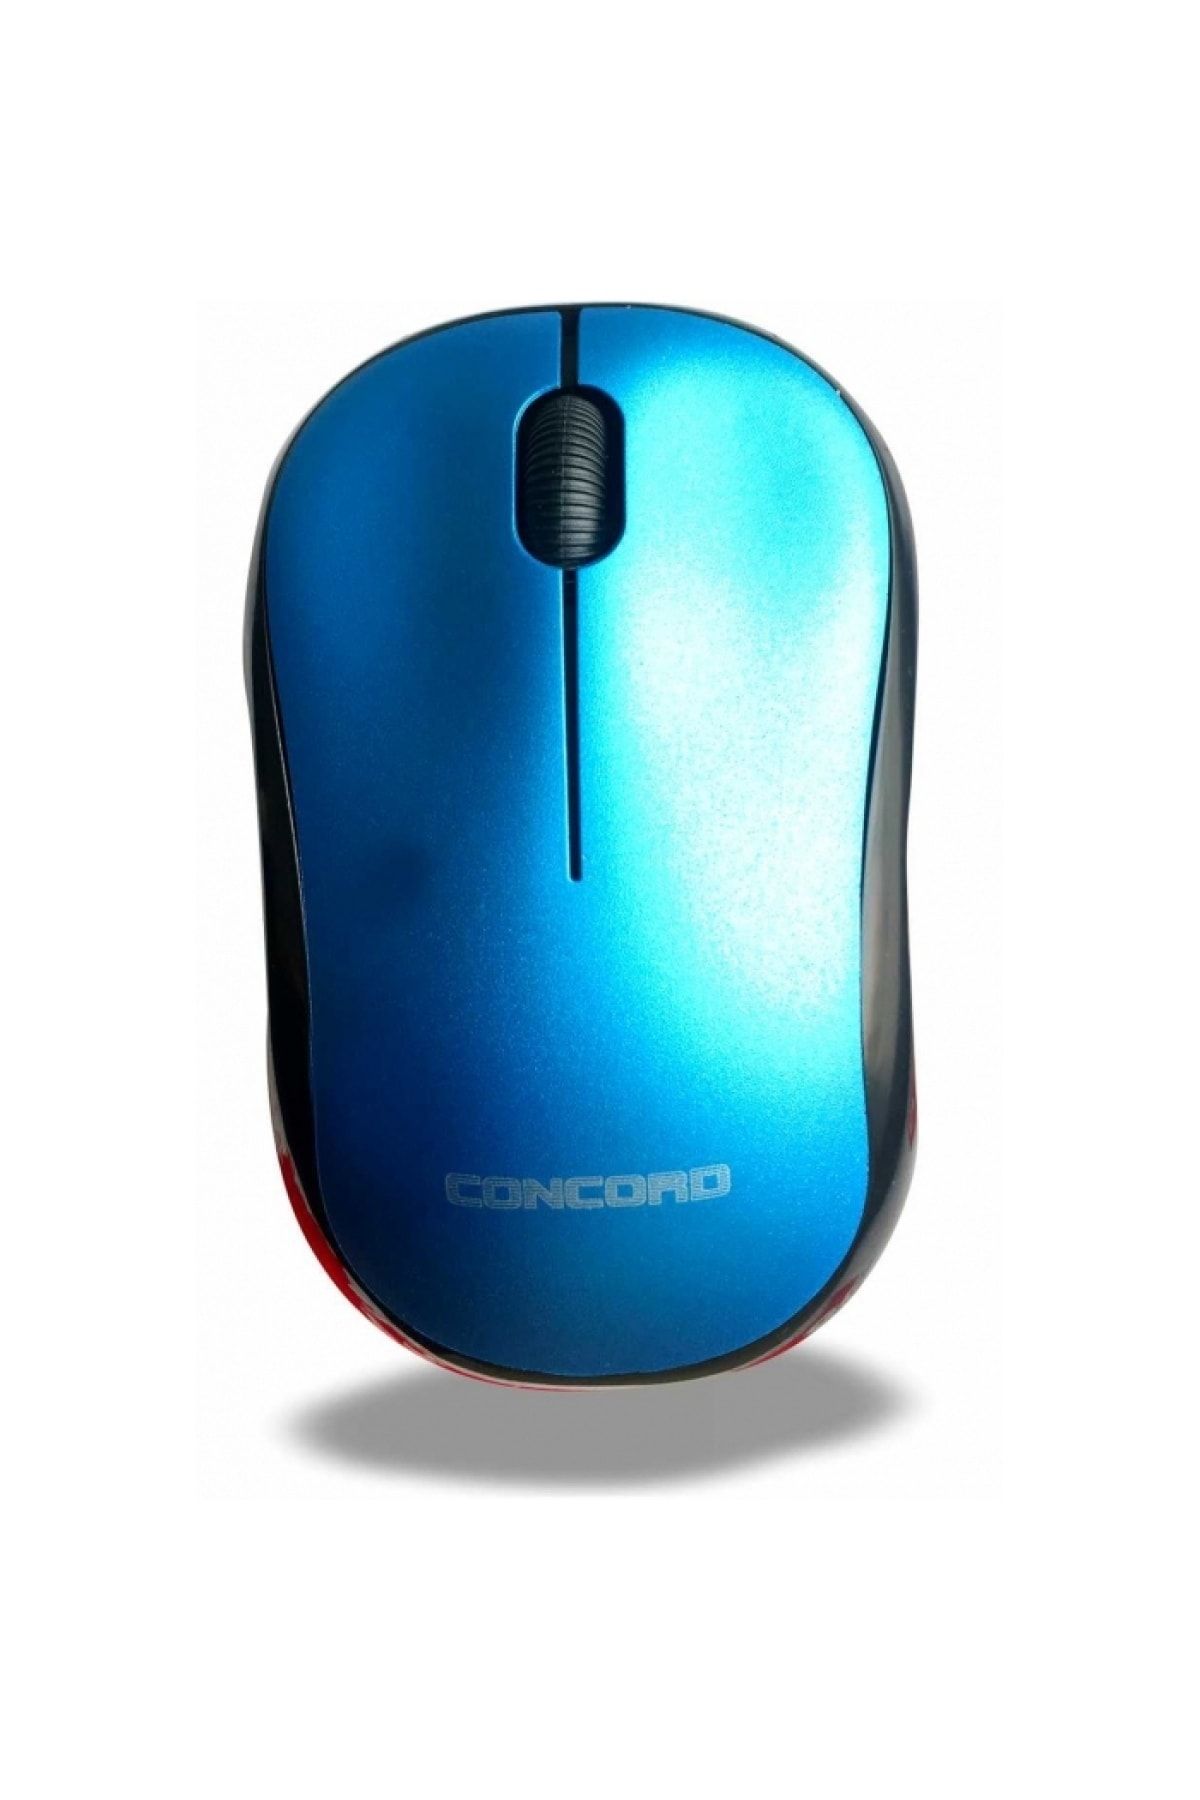 Concord Kablosuz Optik Mouse (fare) 1200 Dpı